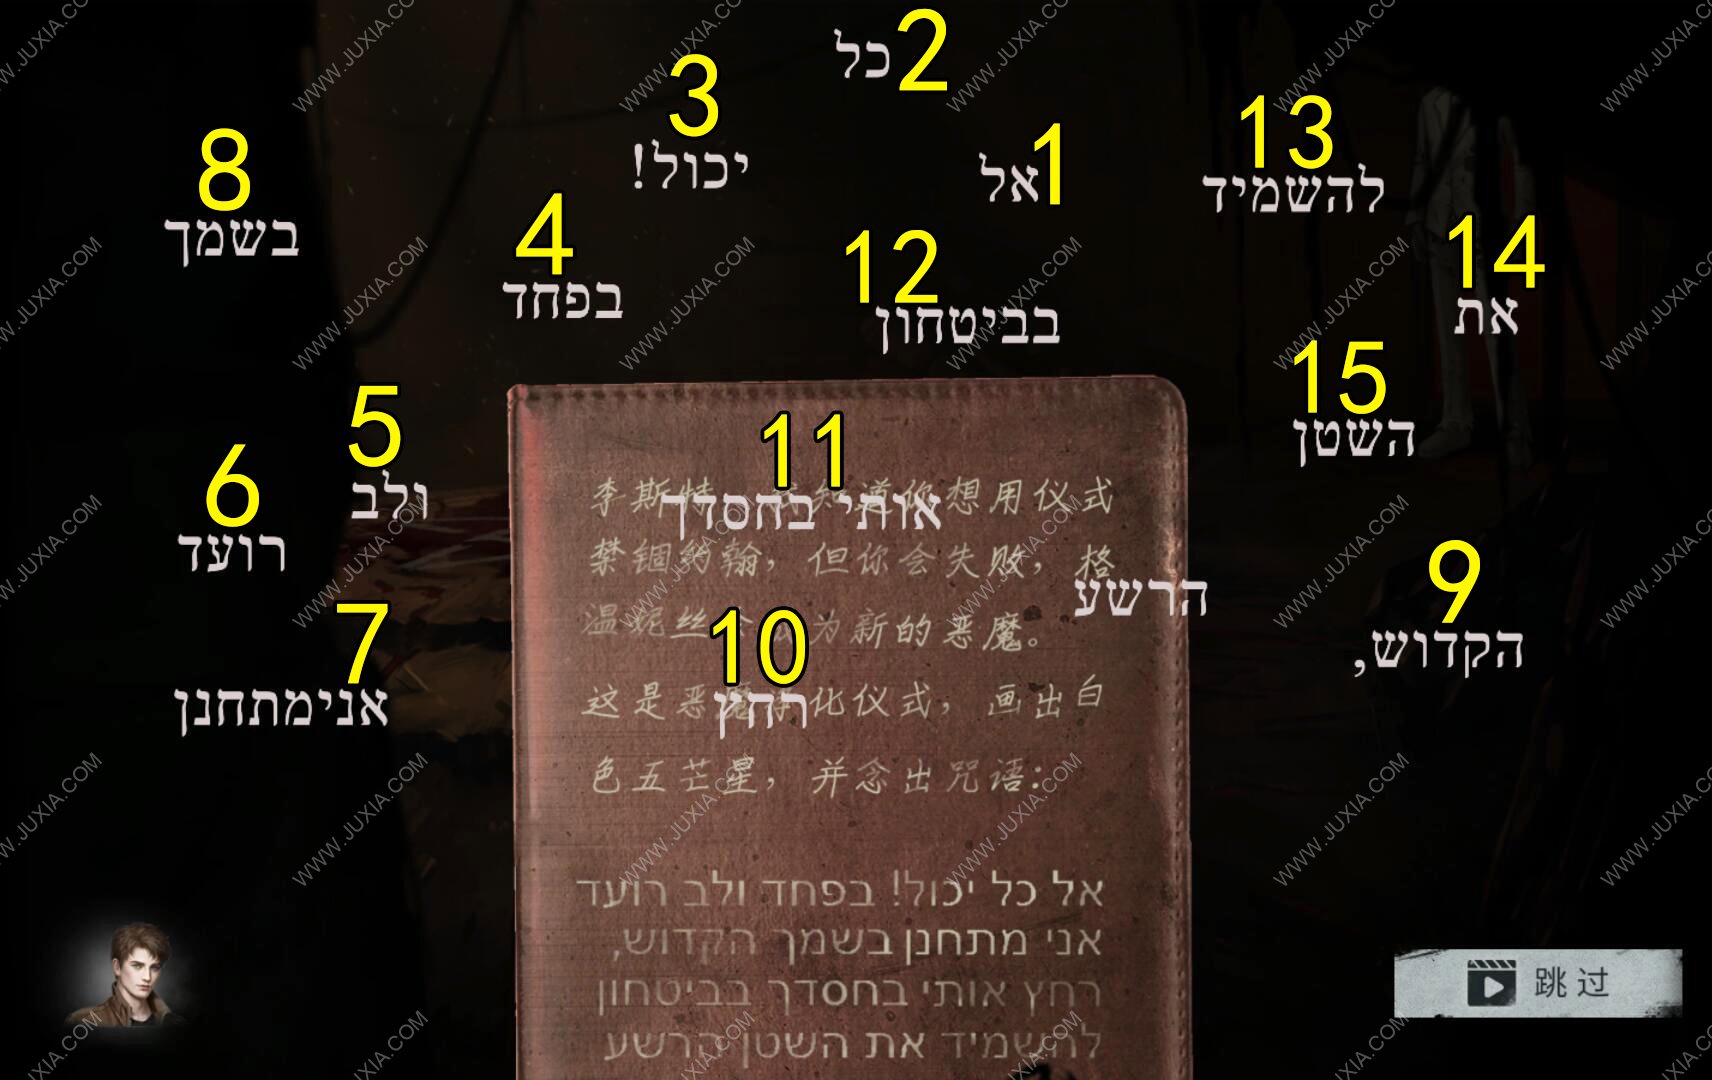 黑暗笔录第五章攻略仪式 黑暗笔录攻略希伯来语